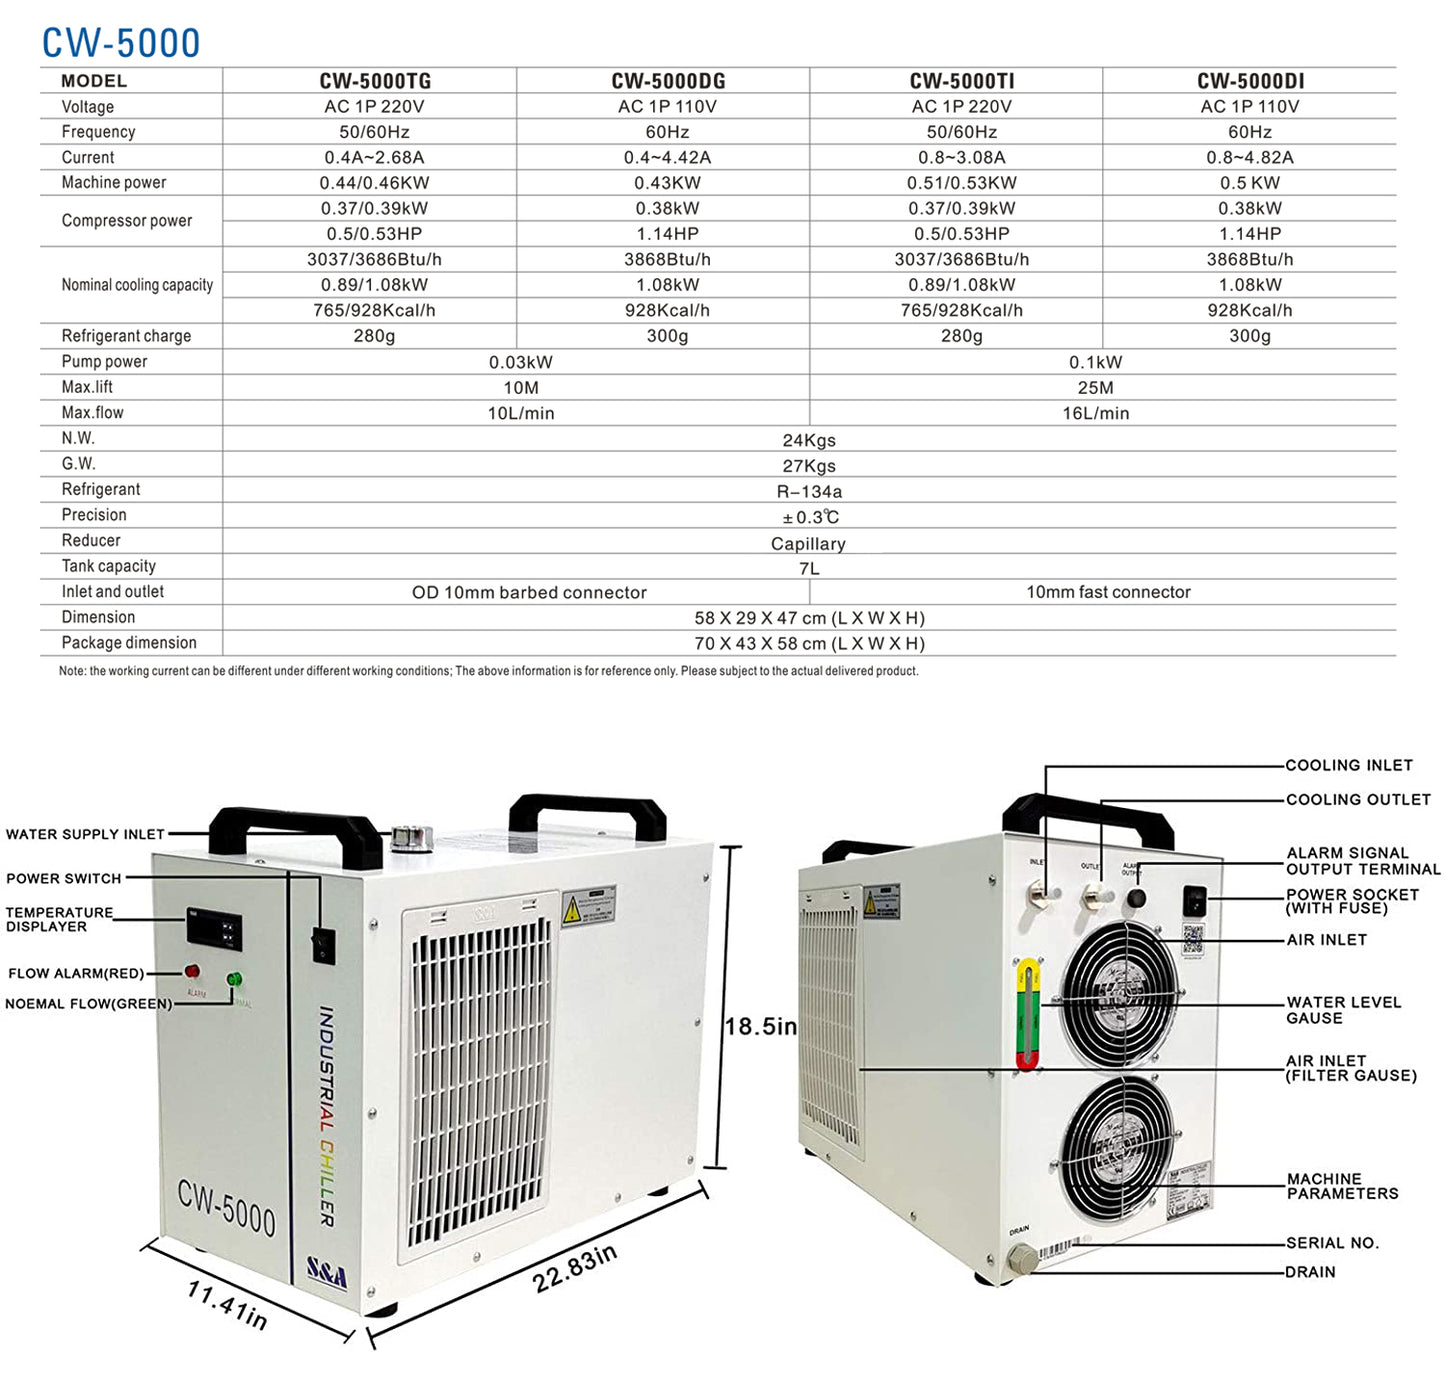 Refroidisseur d'eau industriel S&amp;A série CW-5000 (CW-5000DG/TG)